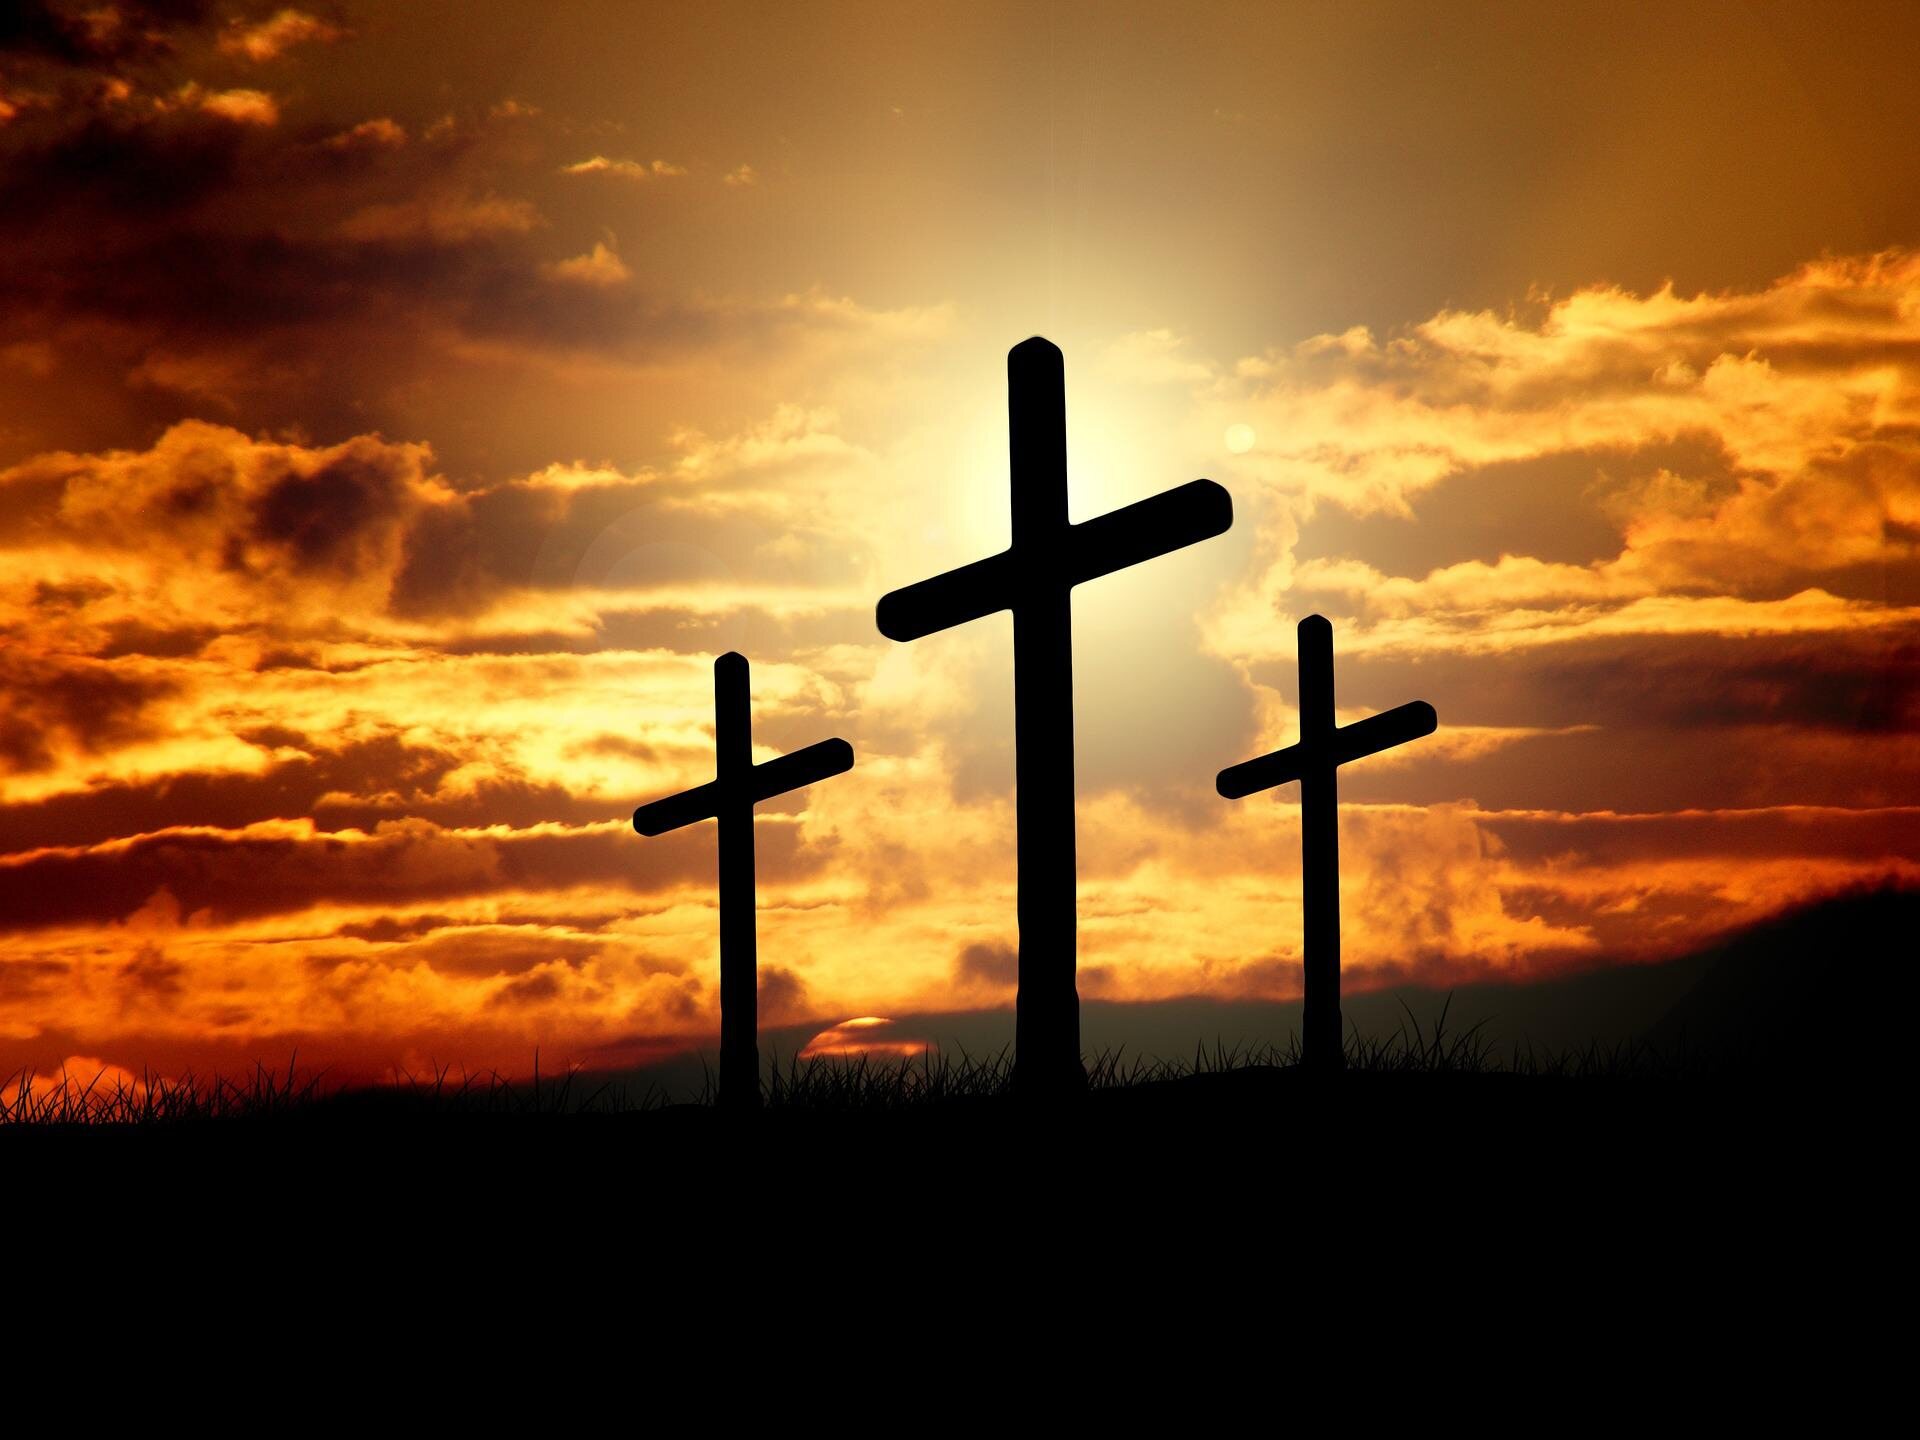 Jak nazywał się człowiek, który zdjął z krzyża ciało Jezusa i złożył je w należącym do siebie grobie?